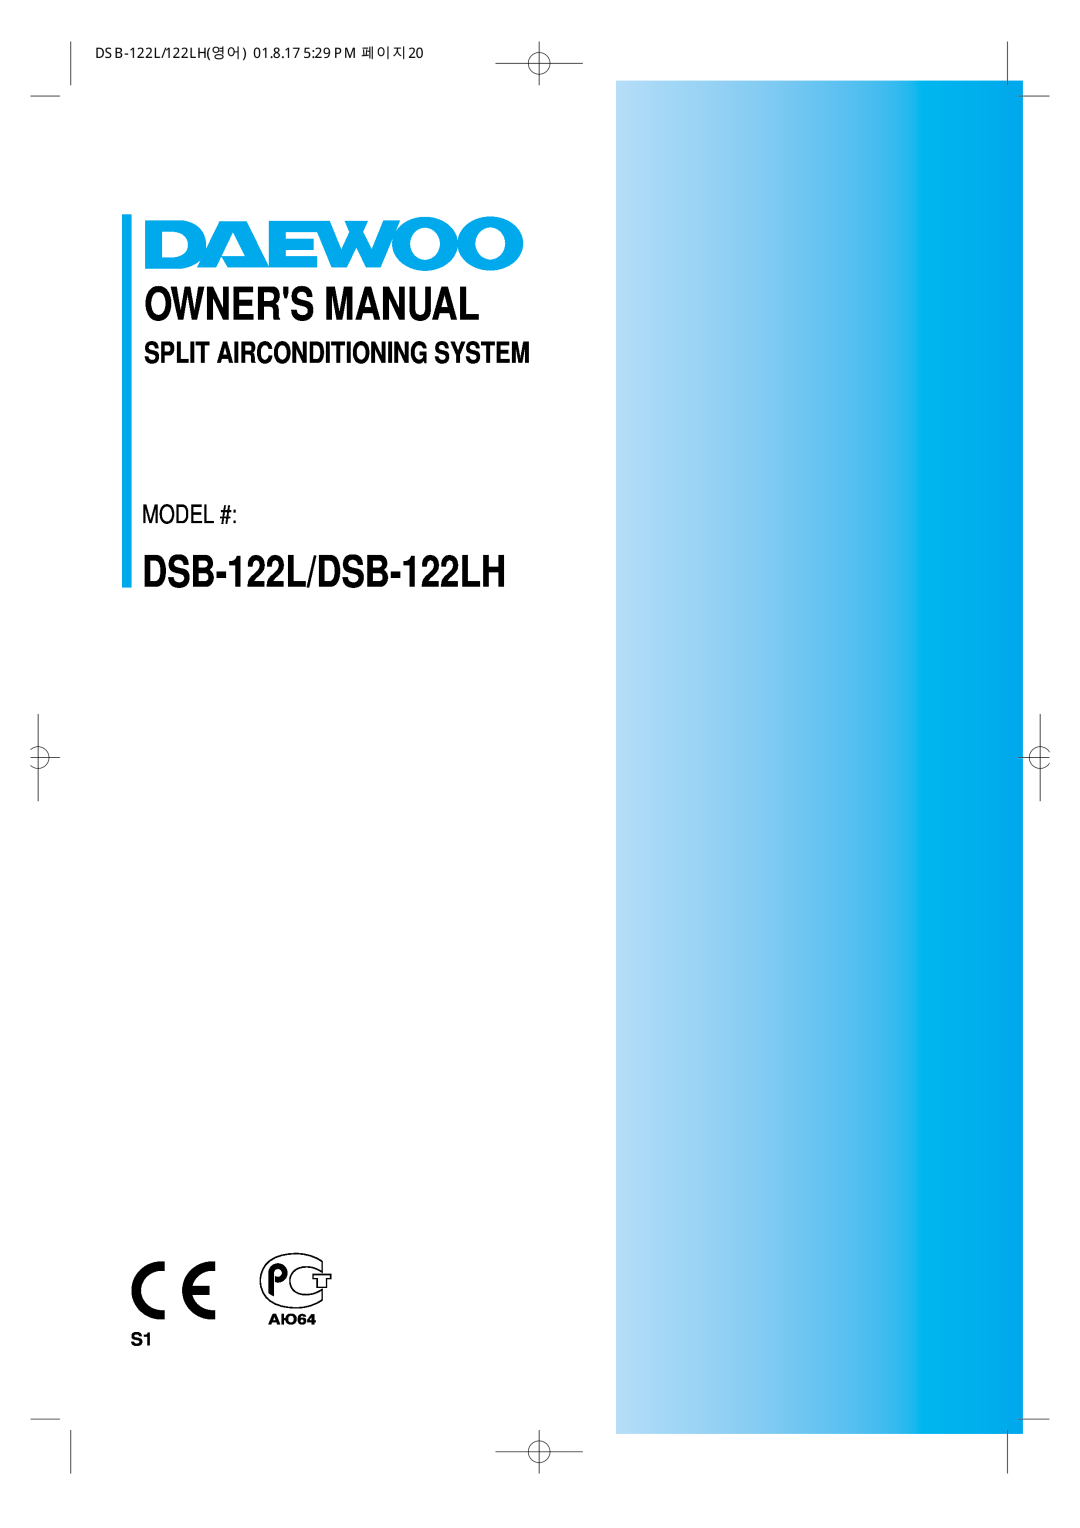 Daewoo owner manual DSB-122L/DSB-122LH, Split Airconditioning System, Model #, DSB-122L/122LH영어 01.8.17 529 PM 페이지20 